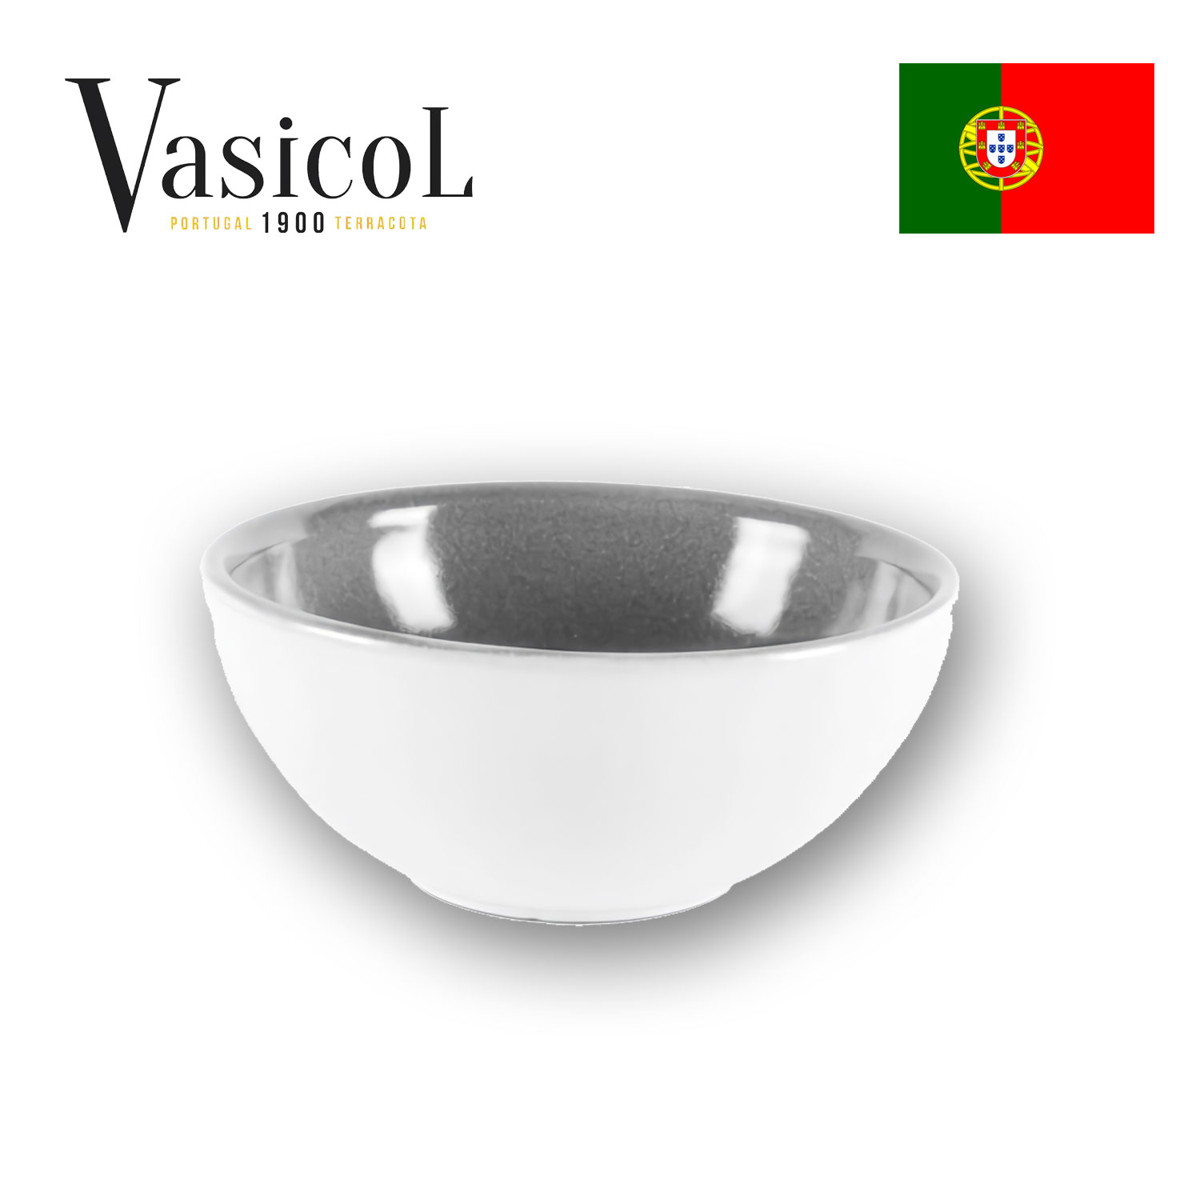 MARIA シリアルボウル プレーン 皿 食器 ポルトガル製 テラコッタ 陶器